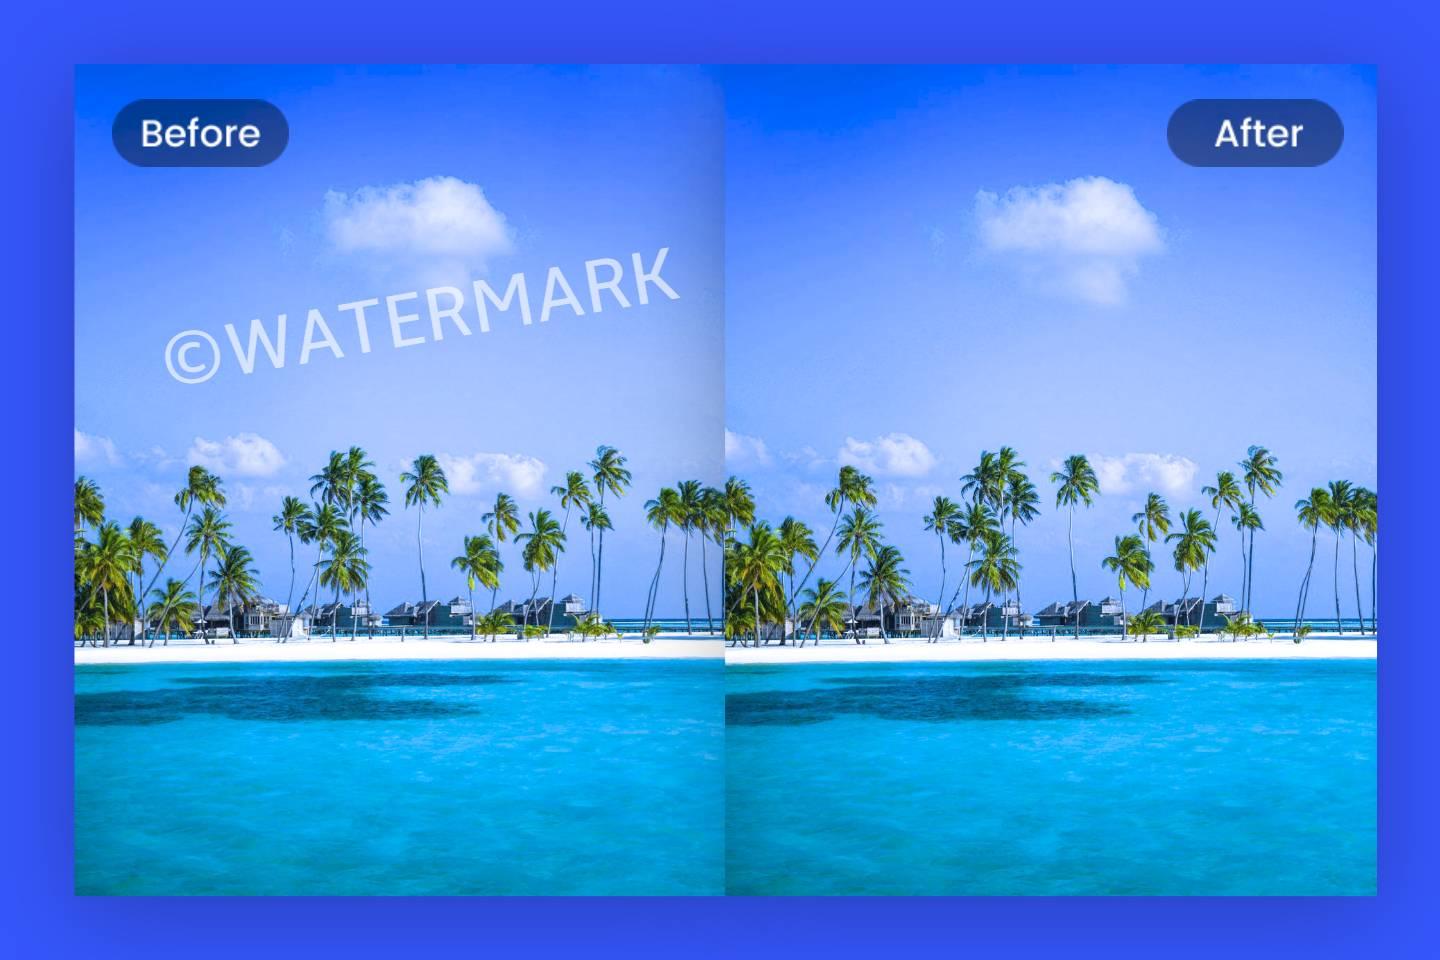 Quitar marca de agua de imagen fácilmente con la herramienta para eliminar marcas de agua online gratuito de Fotor